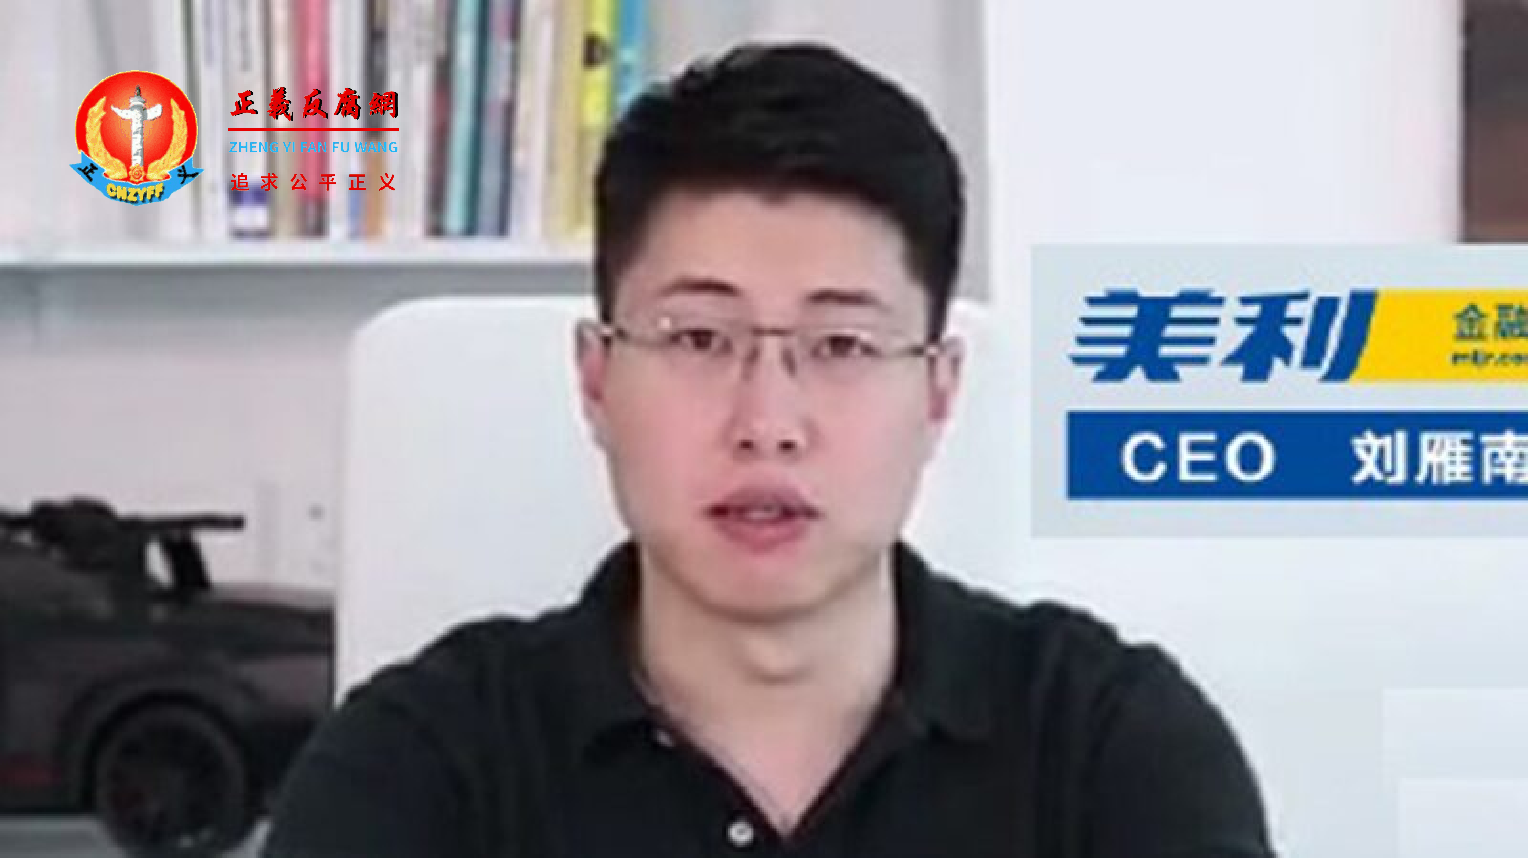 与新网银行有密切合作的中国网贷平台美利车金融的创办人刘雁南，因该公司涉嫌放高利贷和暴力催债，曾于2019年11月被警方抓捕。.png